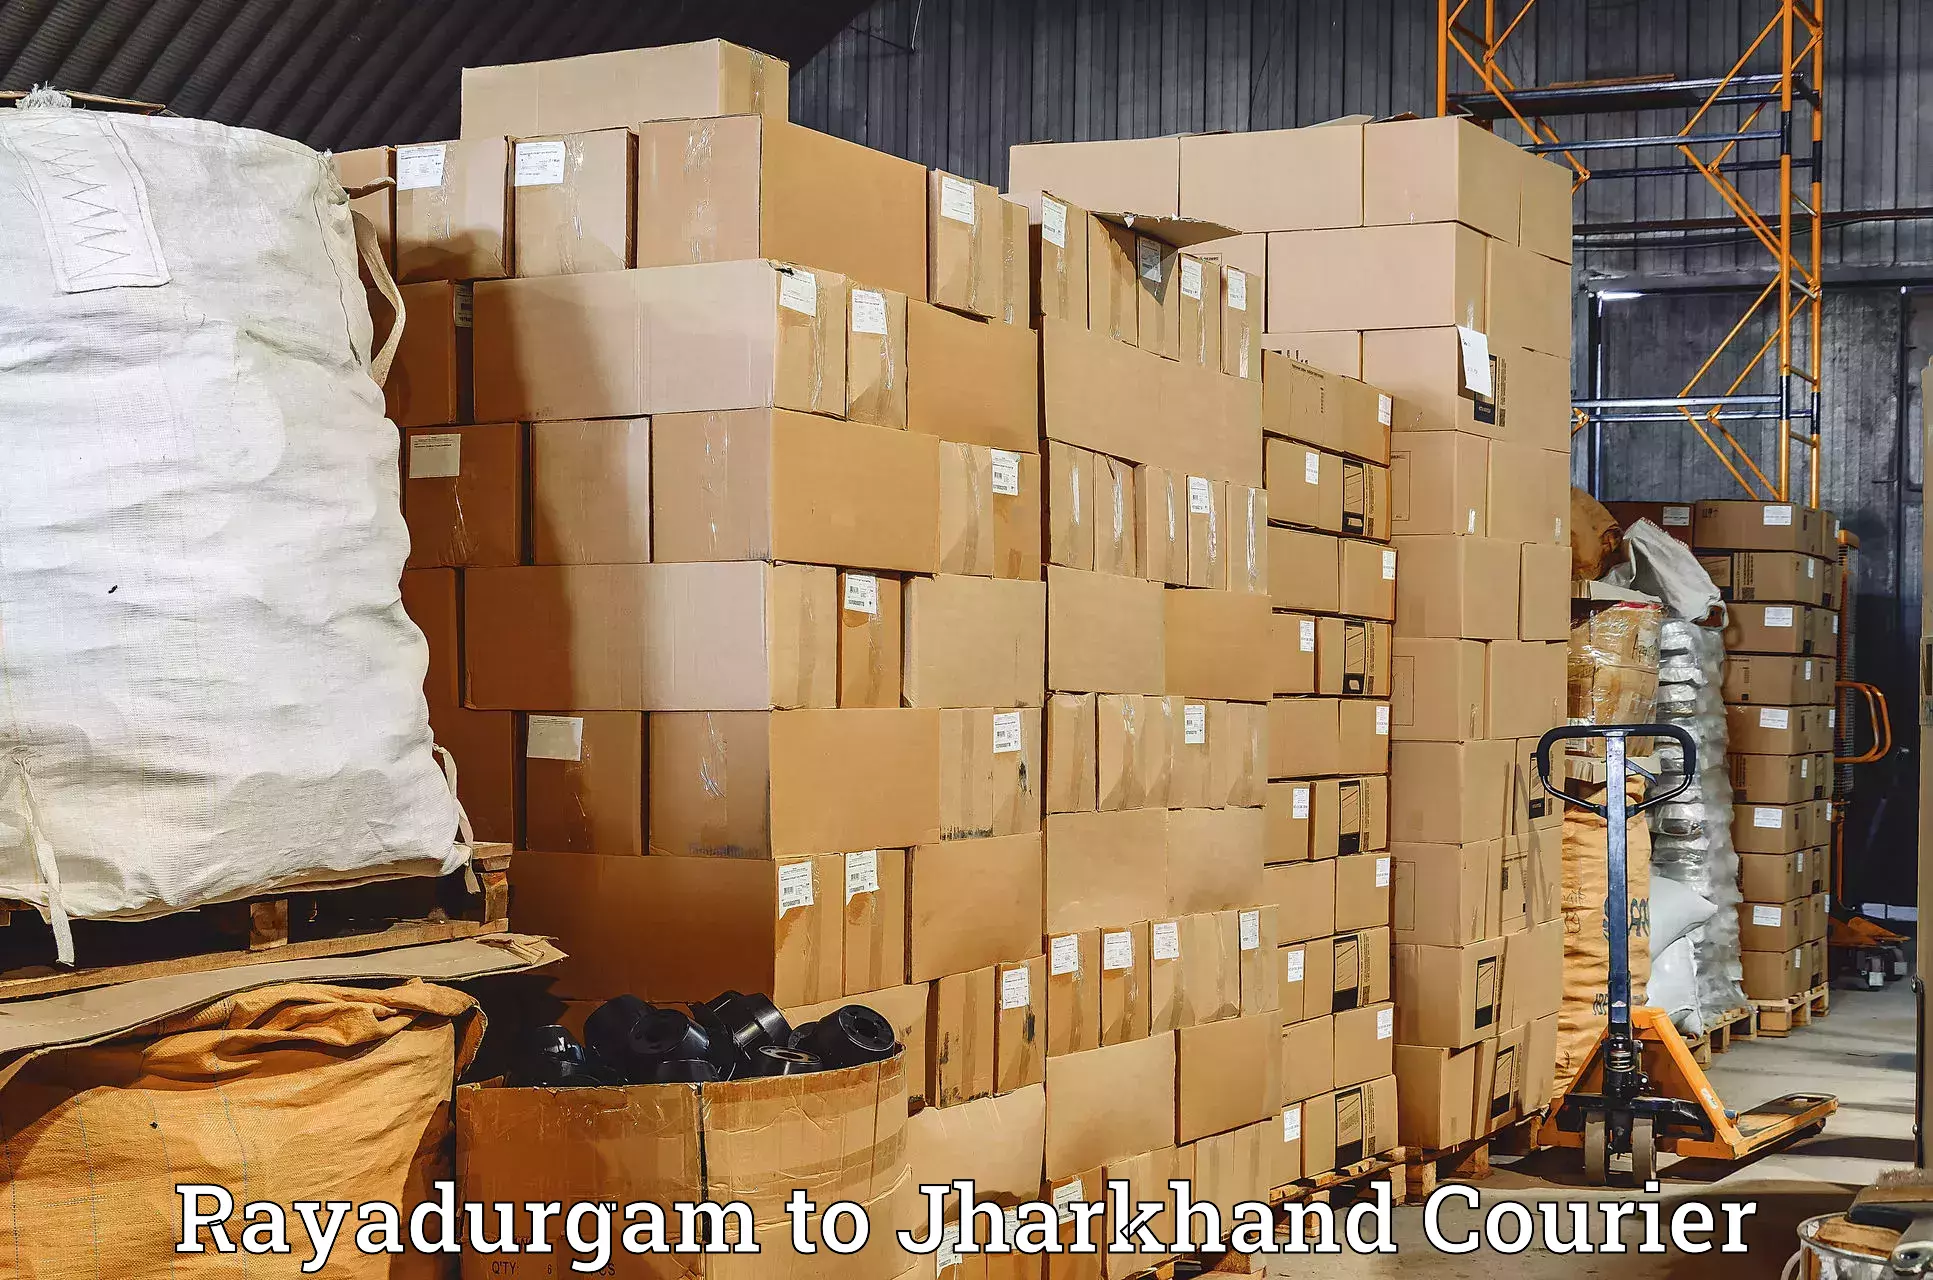 Expedited shipping methods Rayadurgam to Medininagar